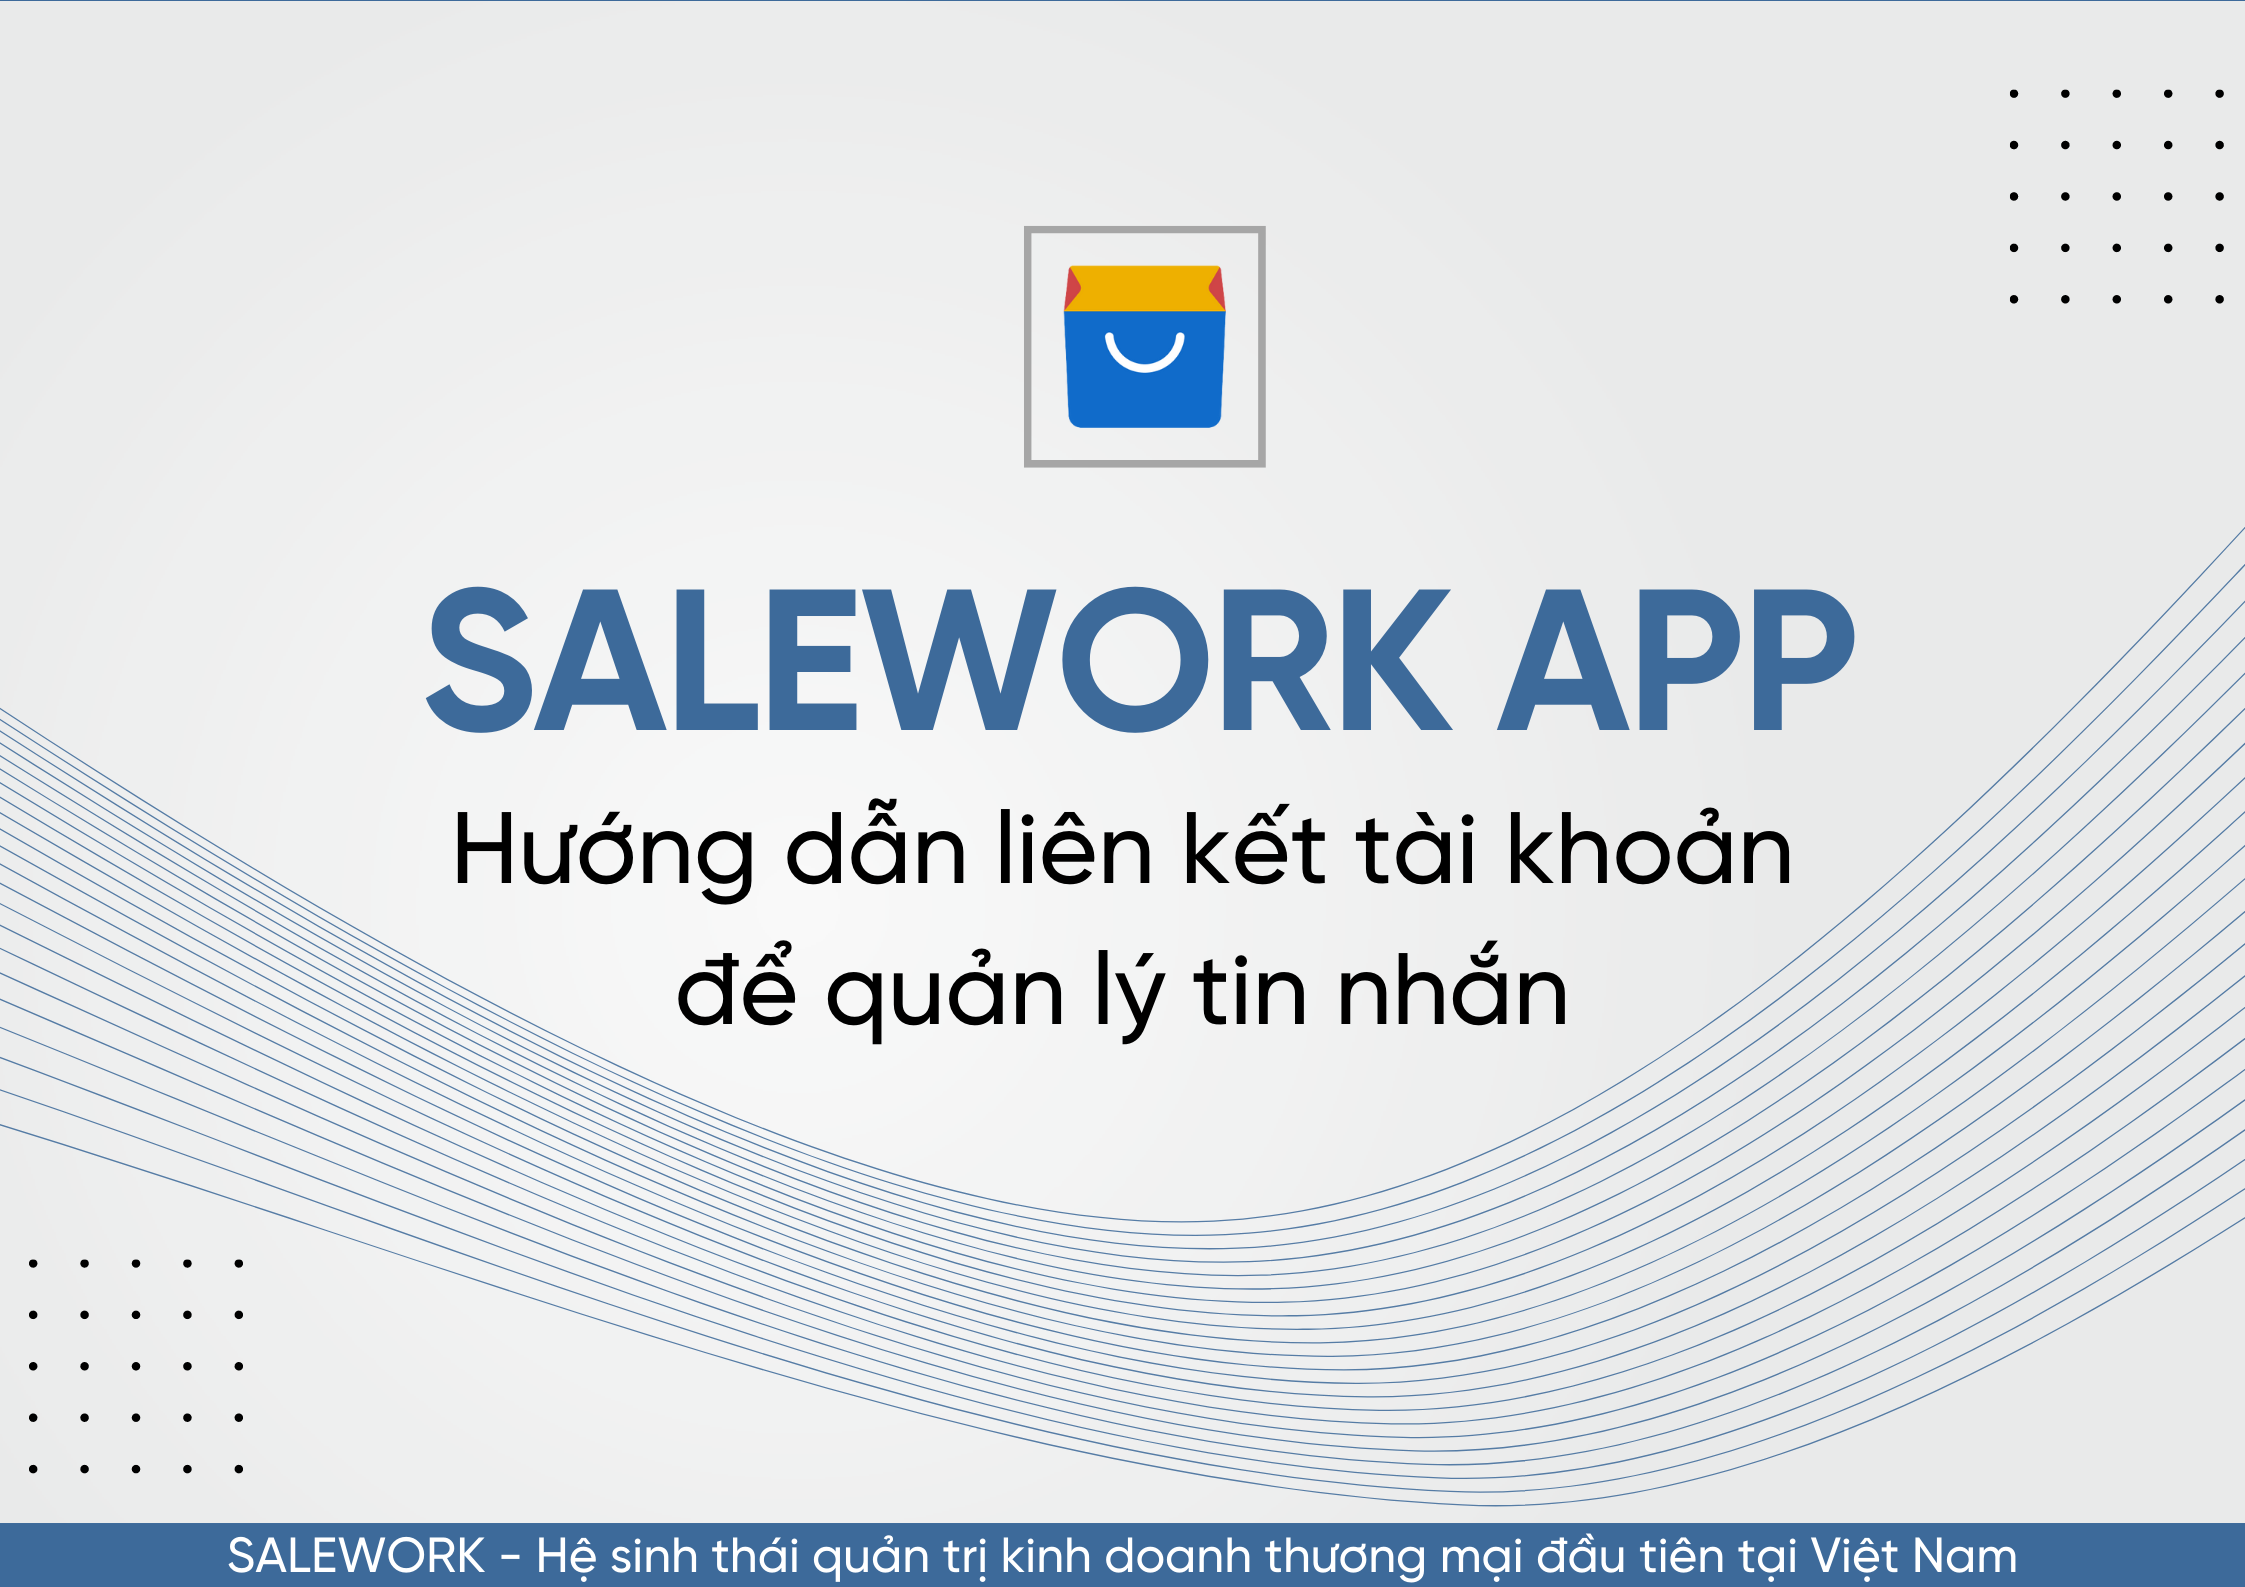 Hướng dẫn liên kết tài khoản để quản lý tin nhắn qua Salework Mobile - 81